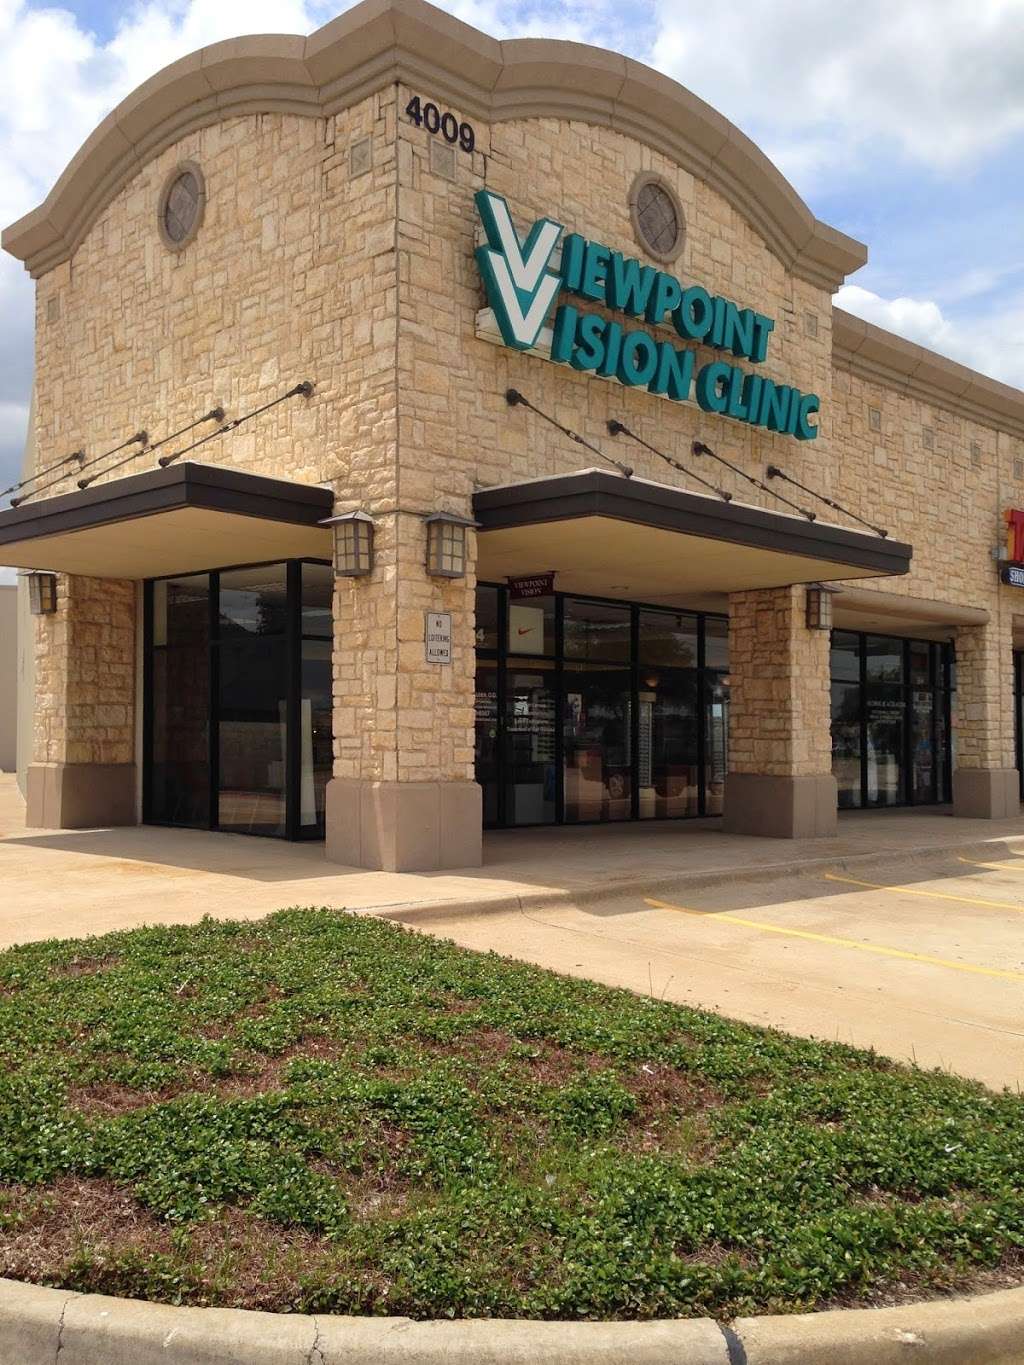 Viewpoint Vision Clinic | 4009 Old Denton Rd # 124, Carrollton, TX 75007 | Phone: (972) 939-6567